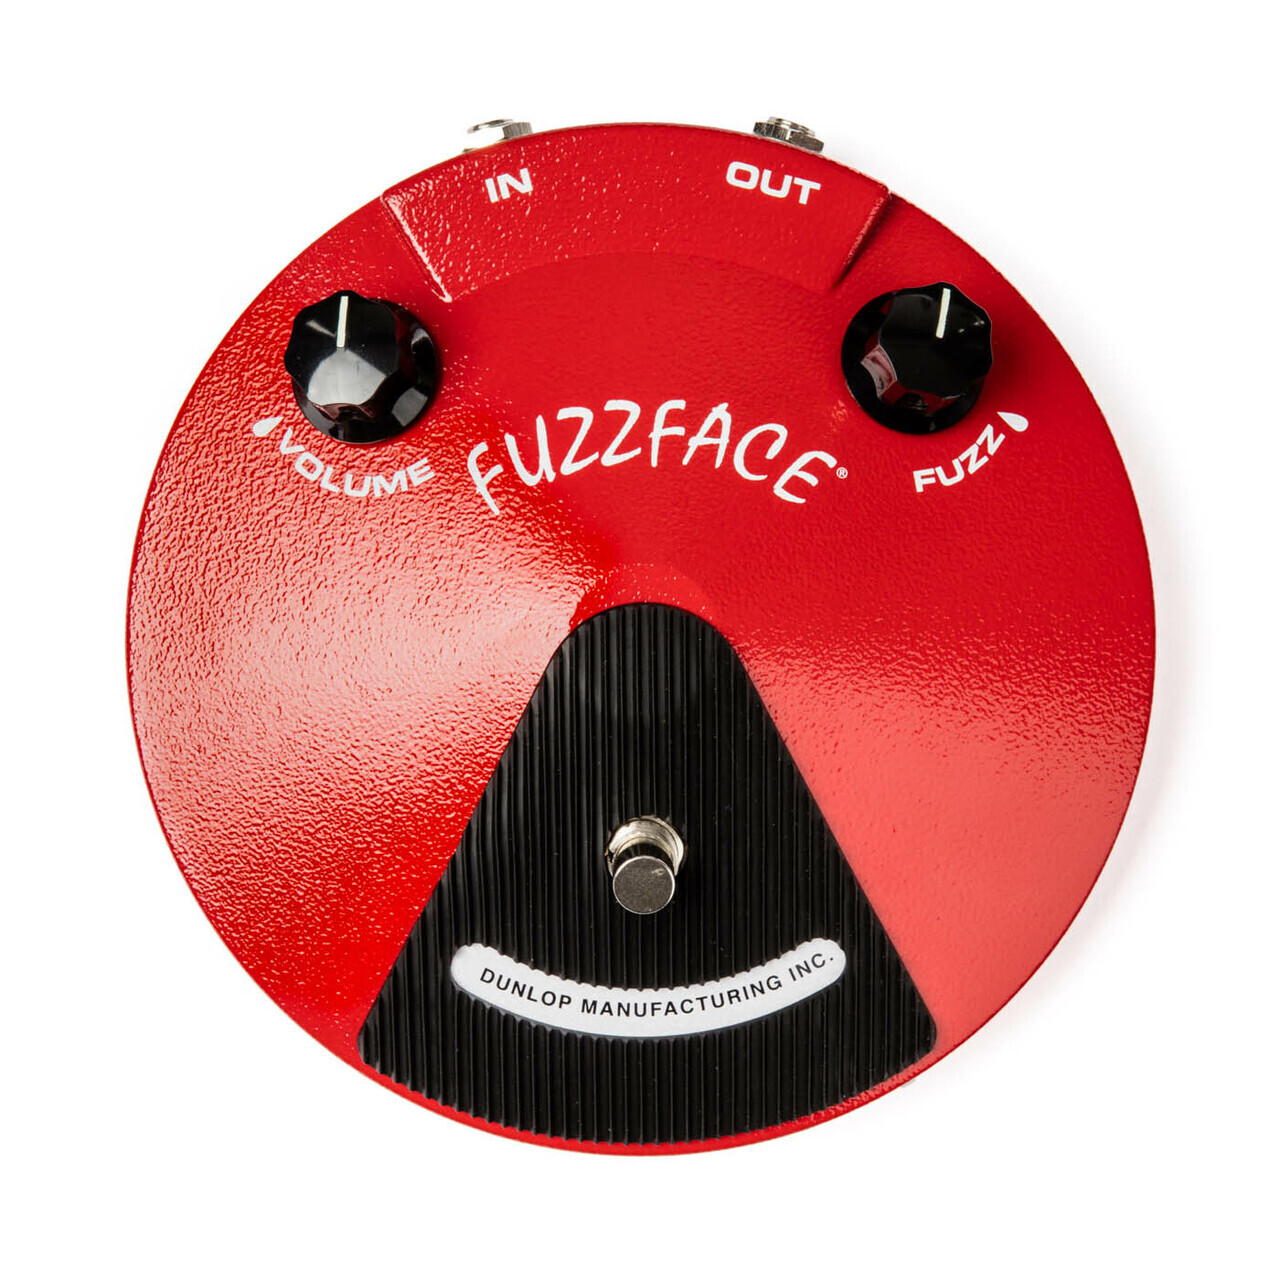 Dunlop Fuzz Face Fuzz Guitar Pedal